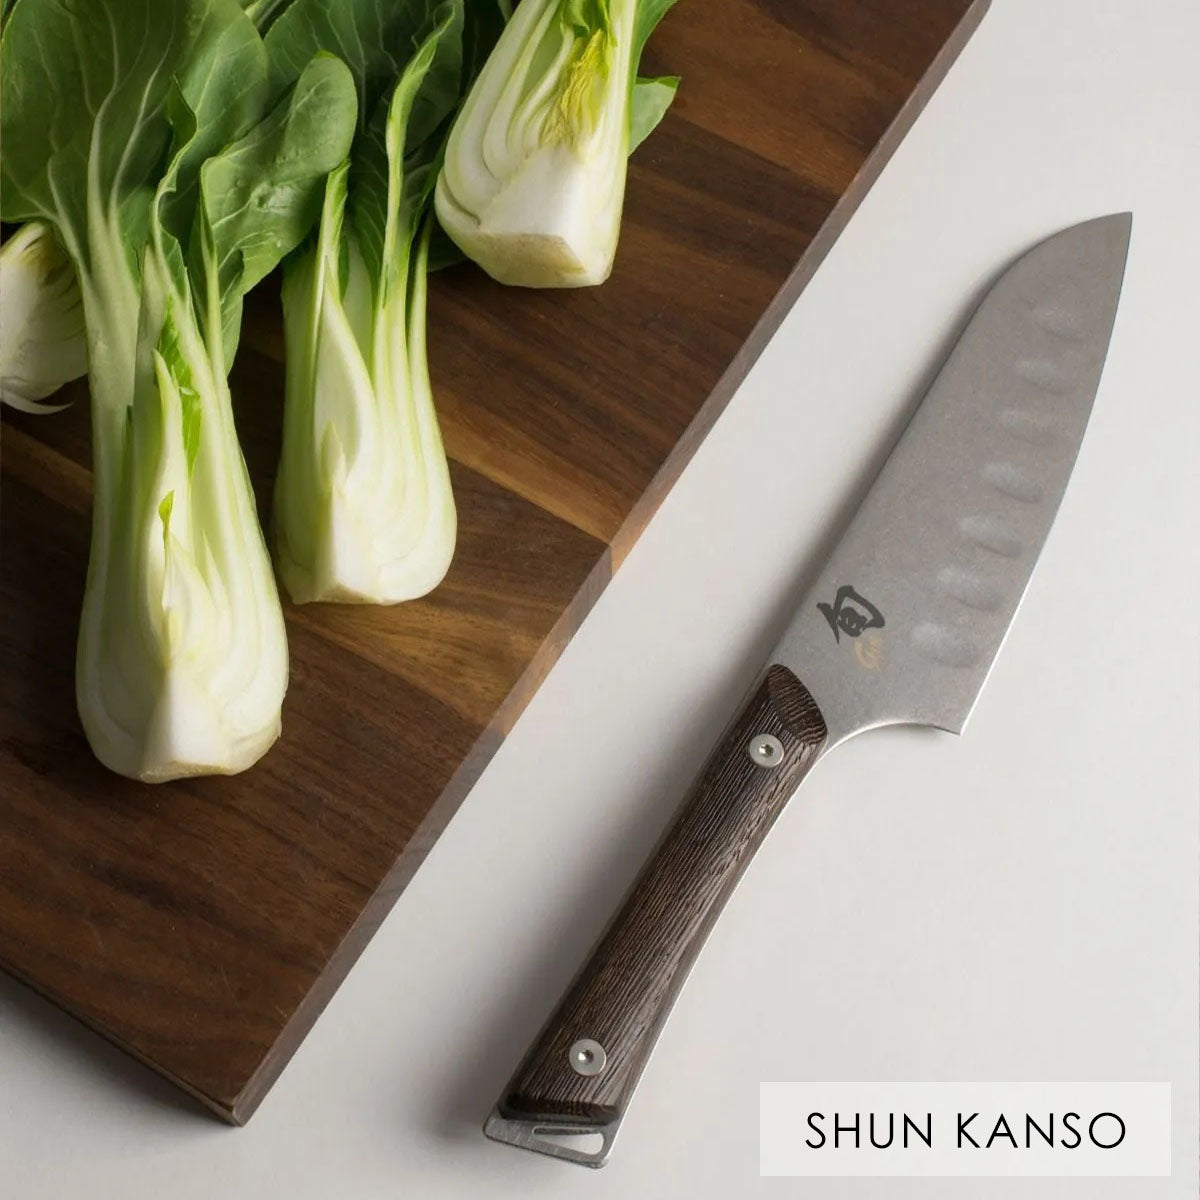 Shun knives Kanso